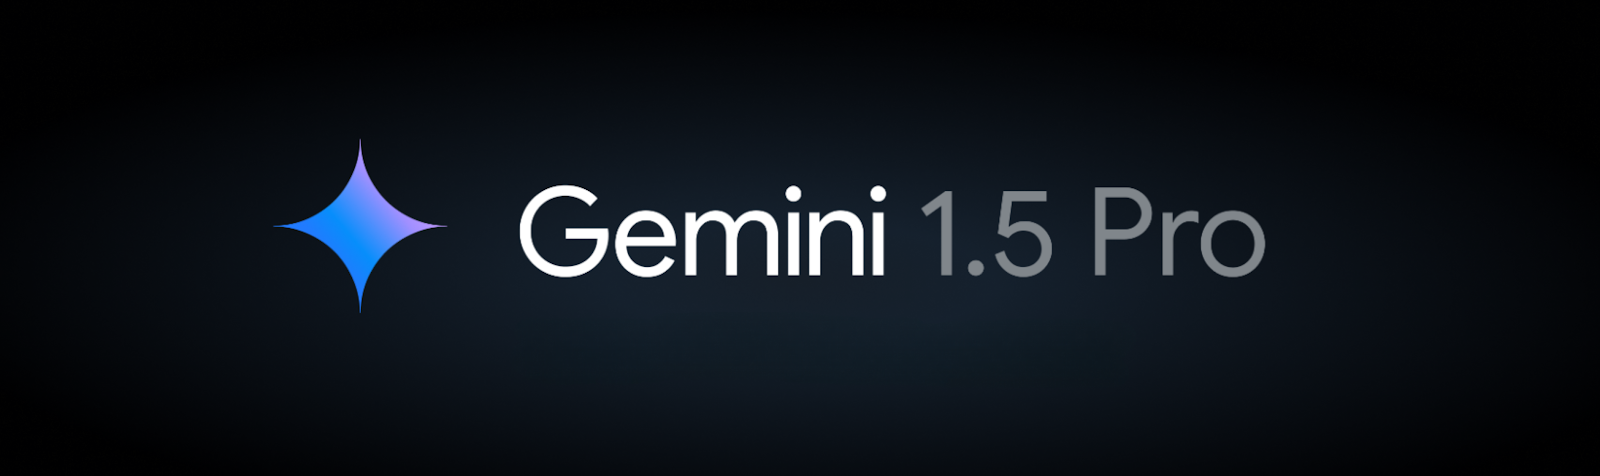 Google julkaisee Gemini 1.5 Pron